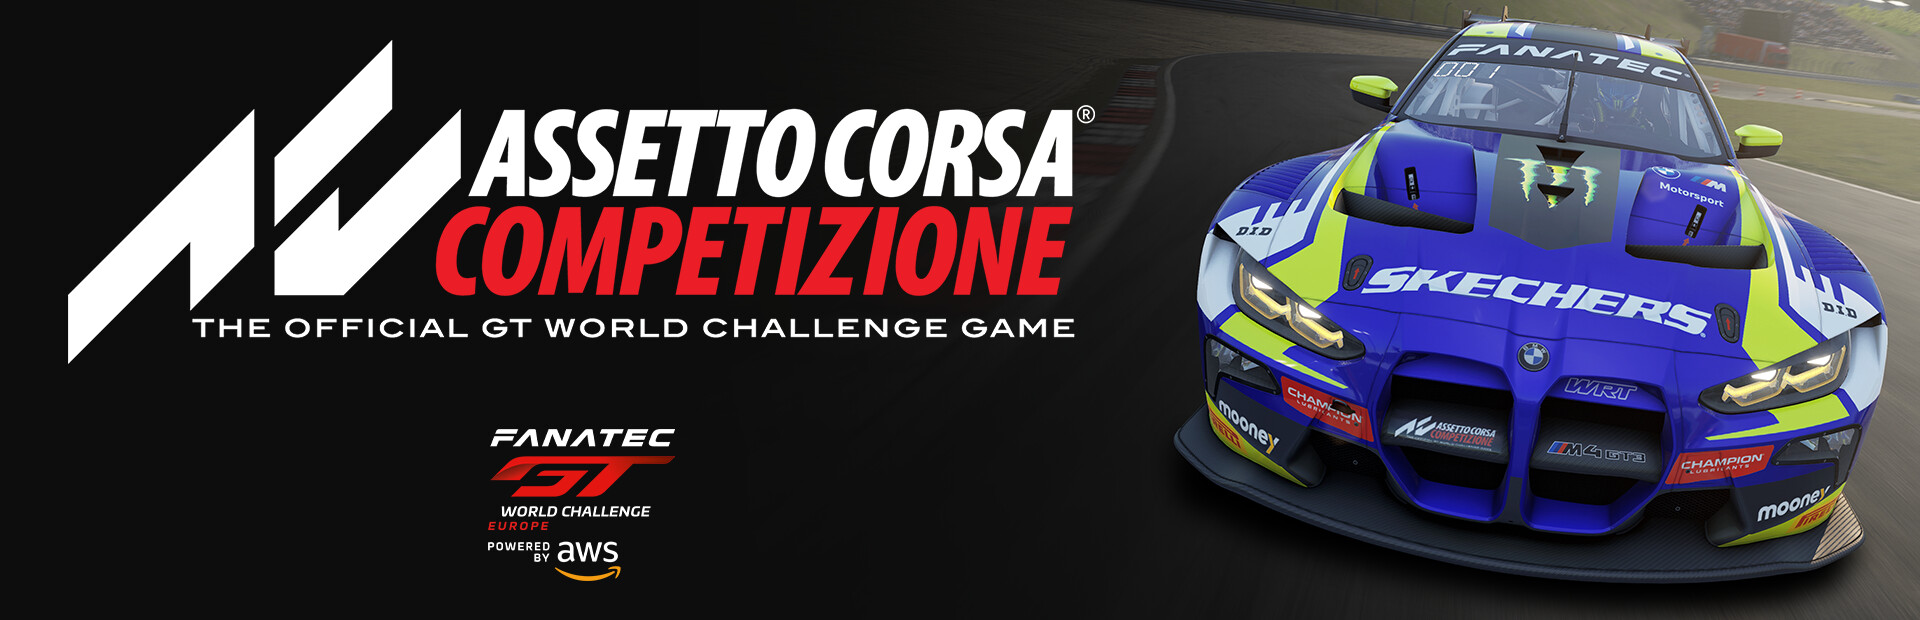 Assetto Corsa Competizione cover image